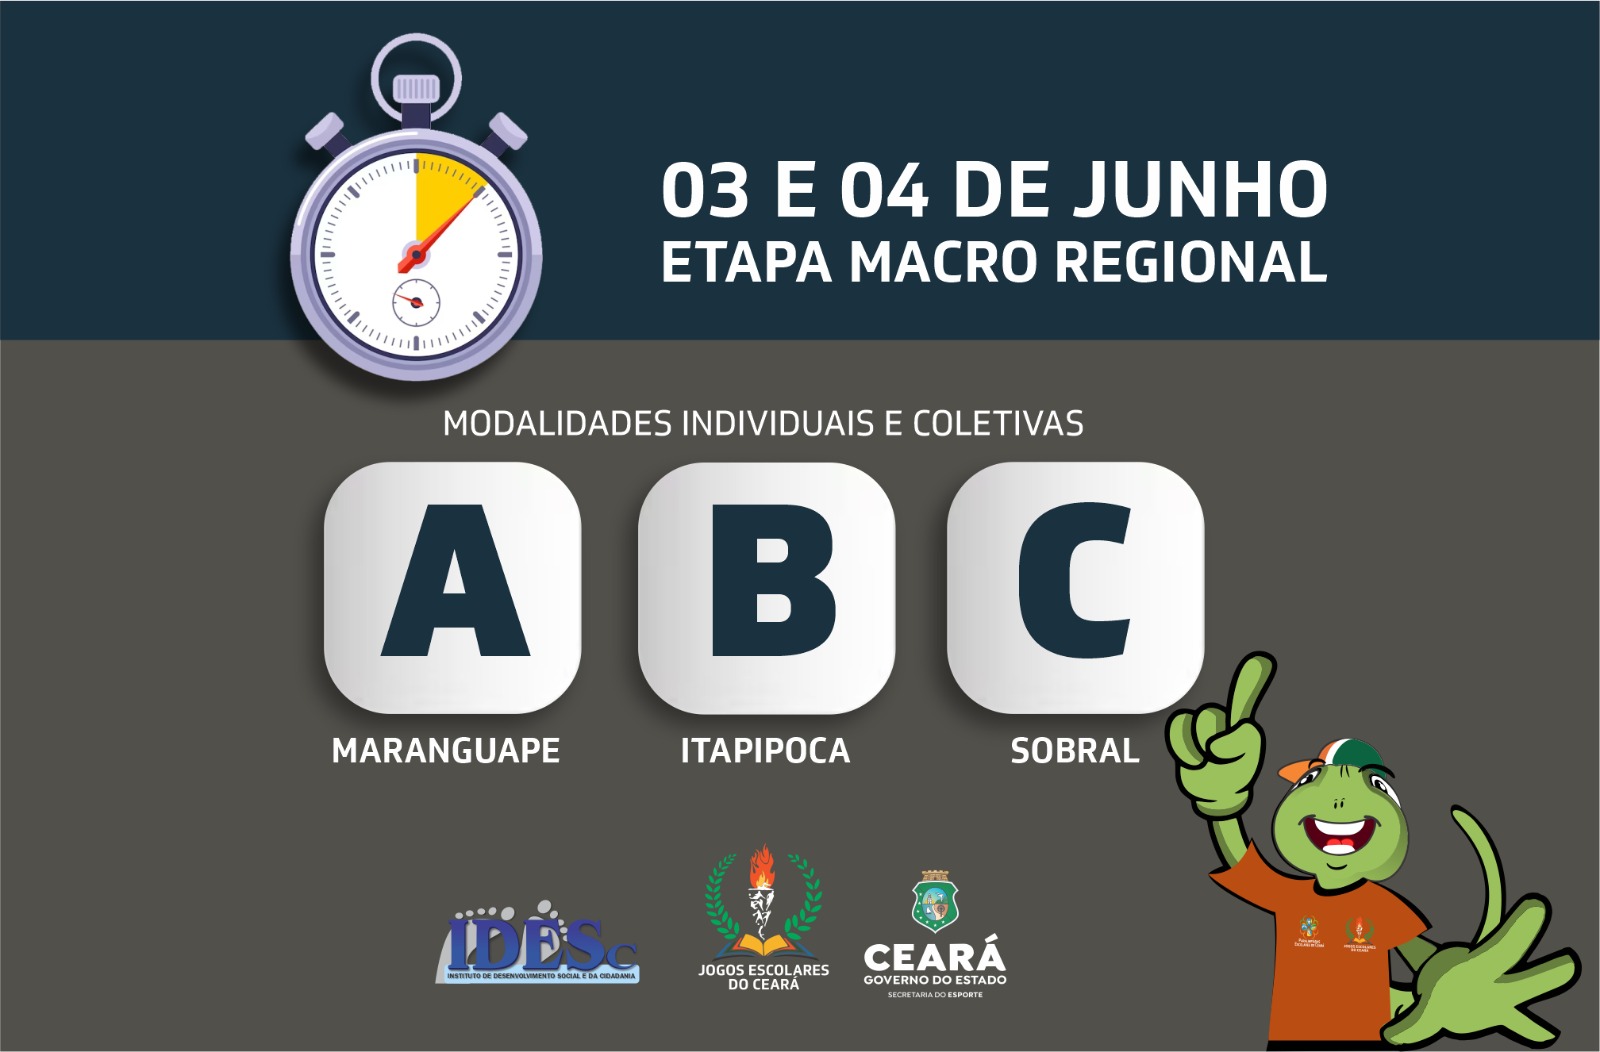 CFO recebe competições dos Jogos Escolares no fim de semana - Governo do  Estado do Ceará